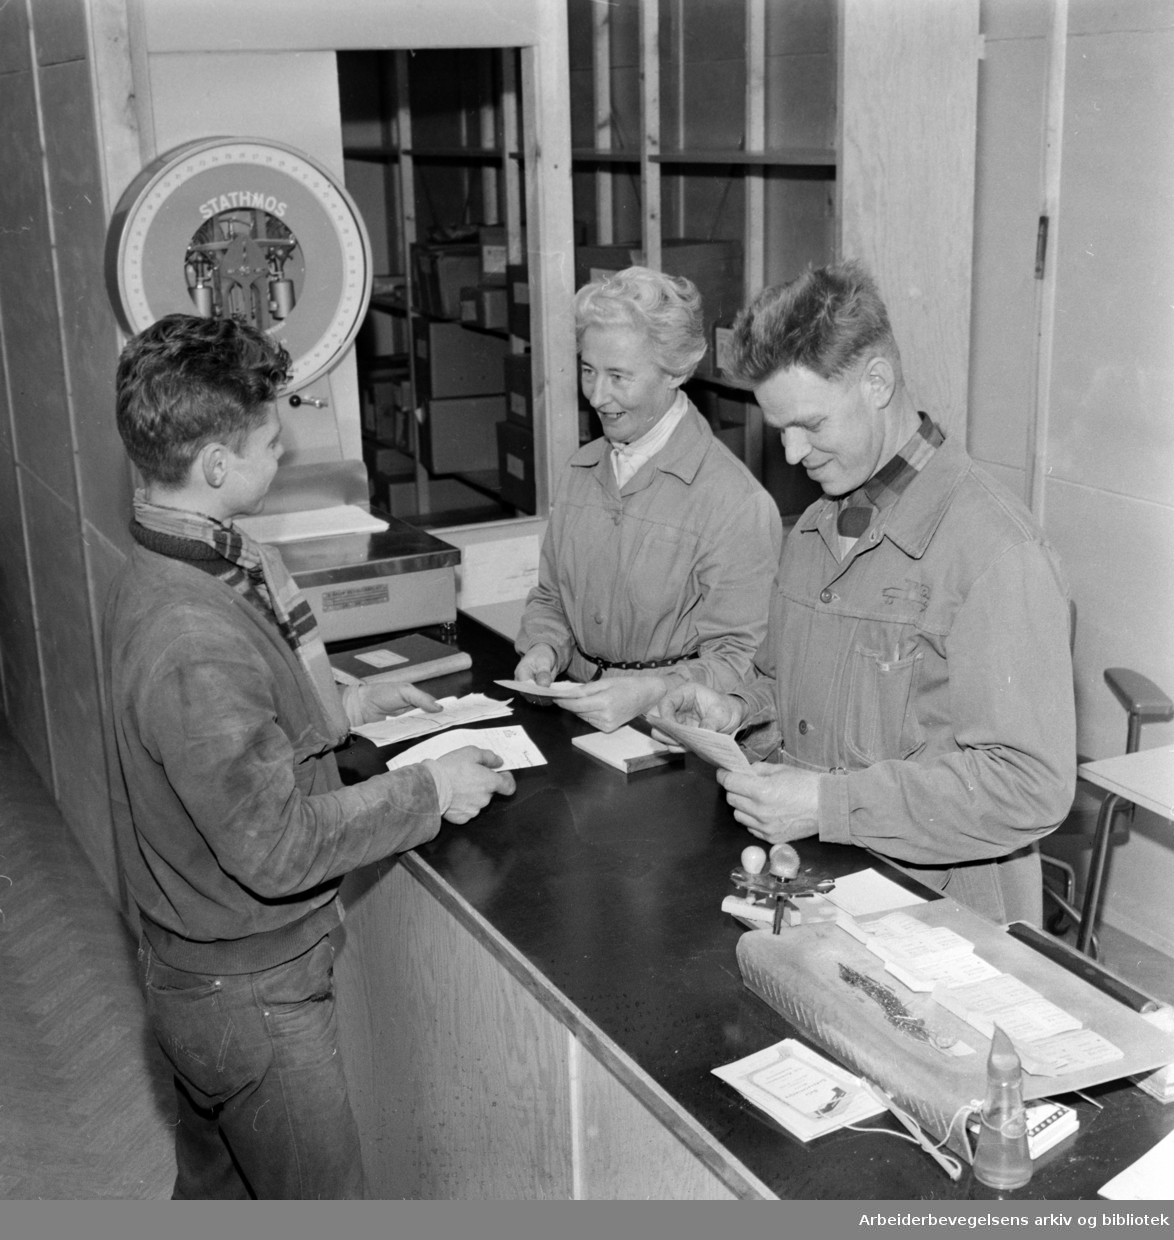 Økern. Godsrutestasjonen. Til venstre står Hans Kopperud fra Jessheim-ruta. Han blir ekspedert av Ingrid Steen og Gustav Eek. Mars 1960